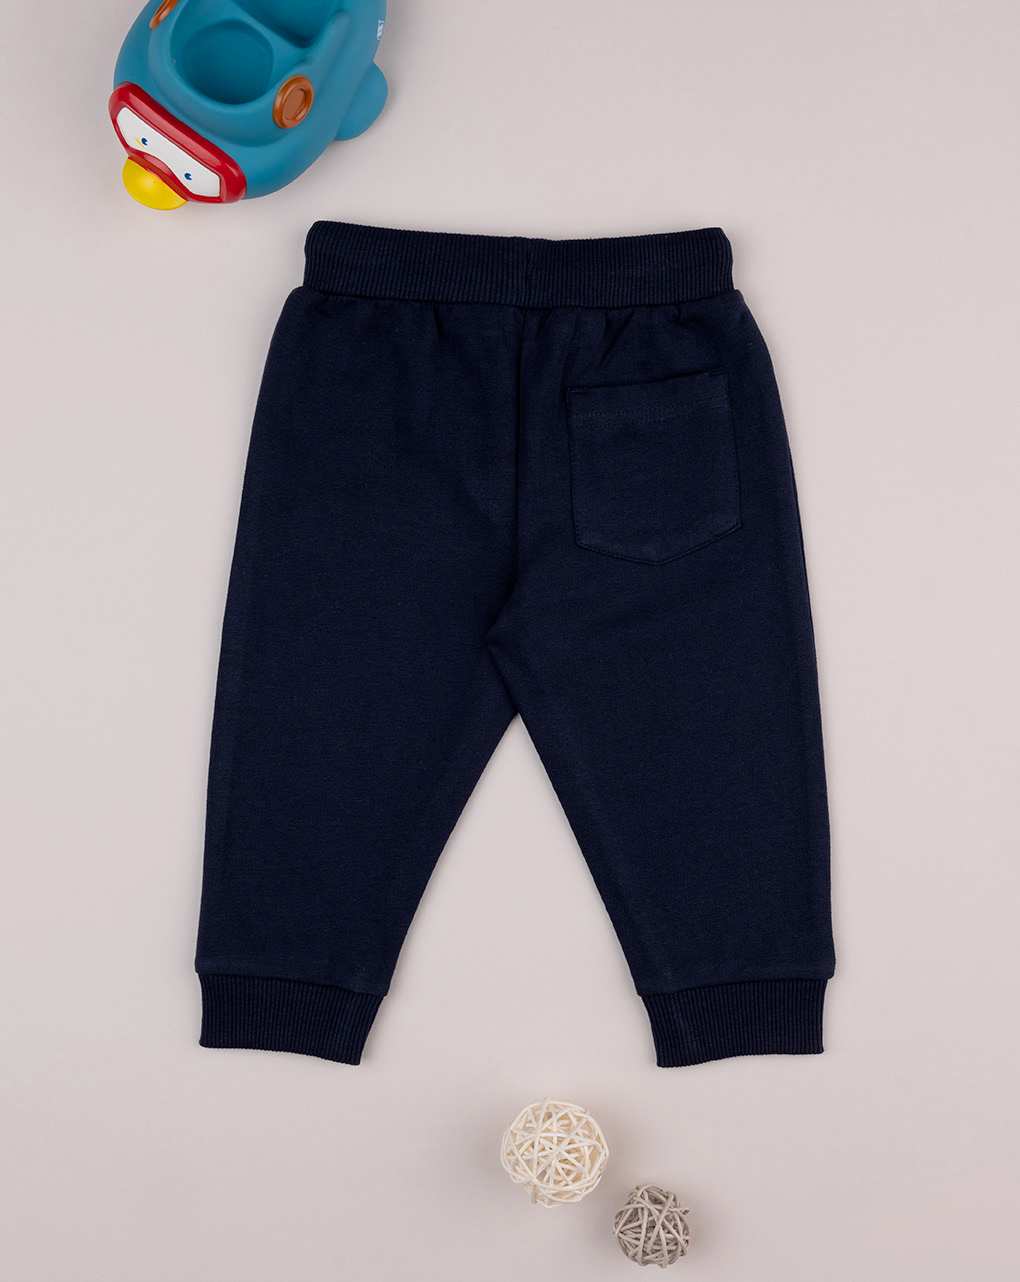 βρεφικό παντελόνι φούτερ μπλε με baseball για αγόρι - Prénatal